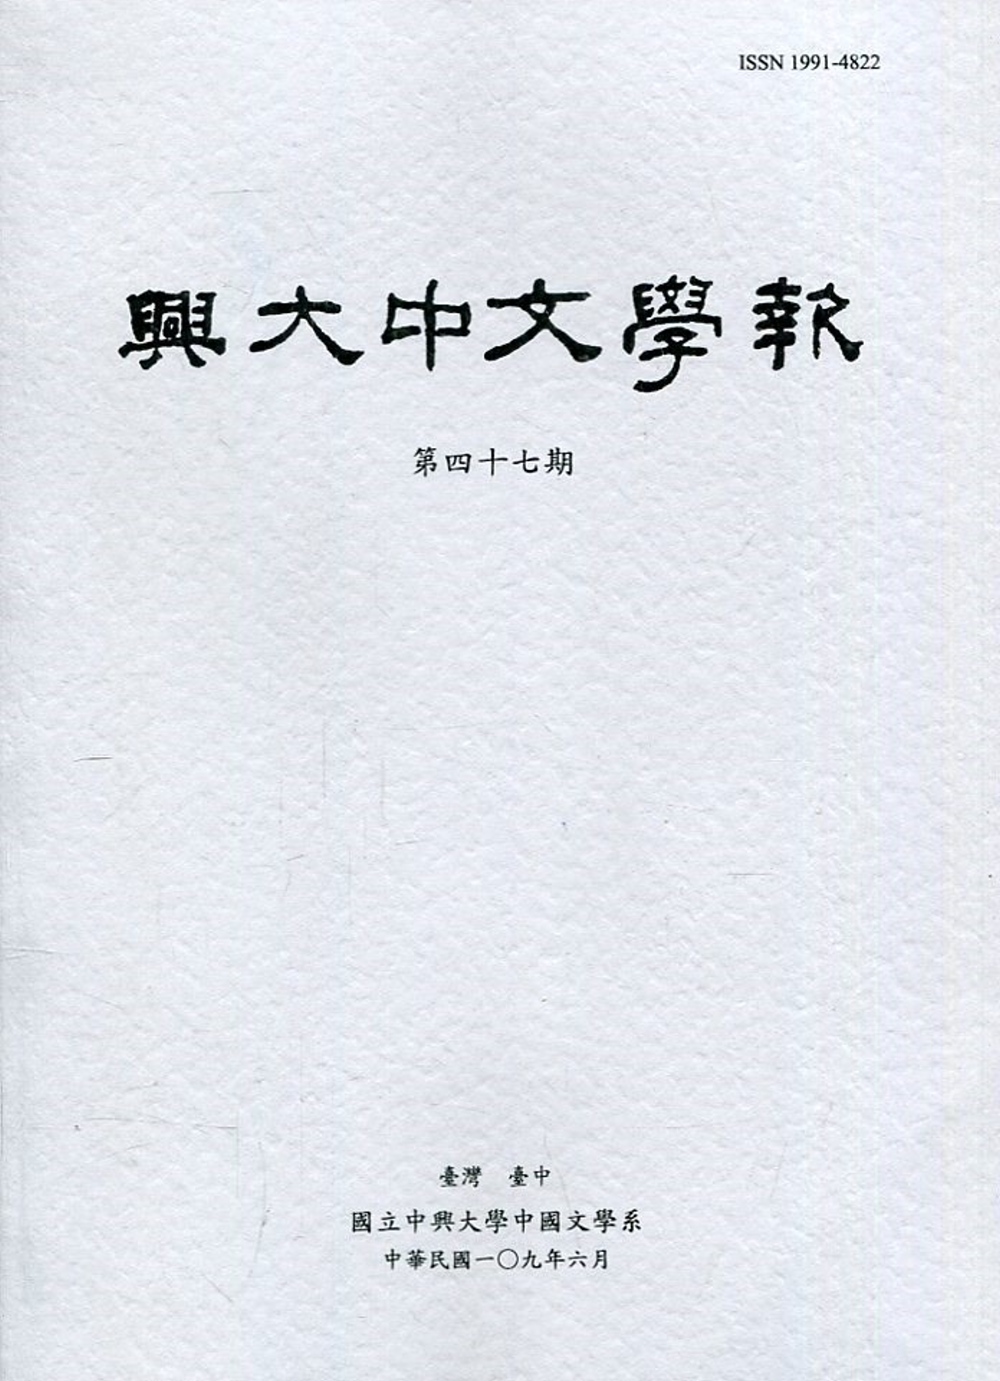 興大中文學報47期(109年6月)